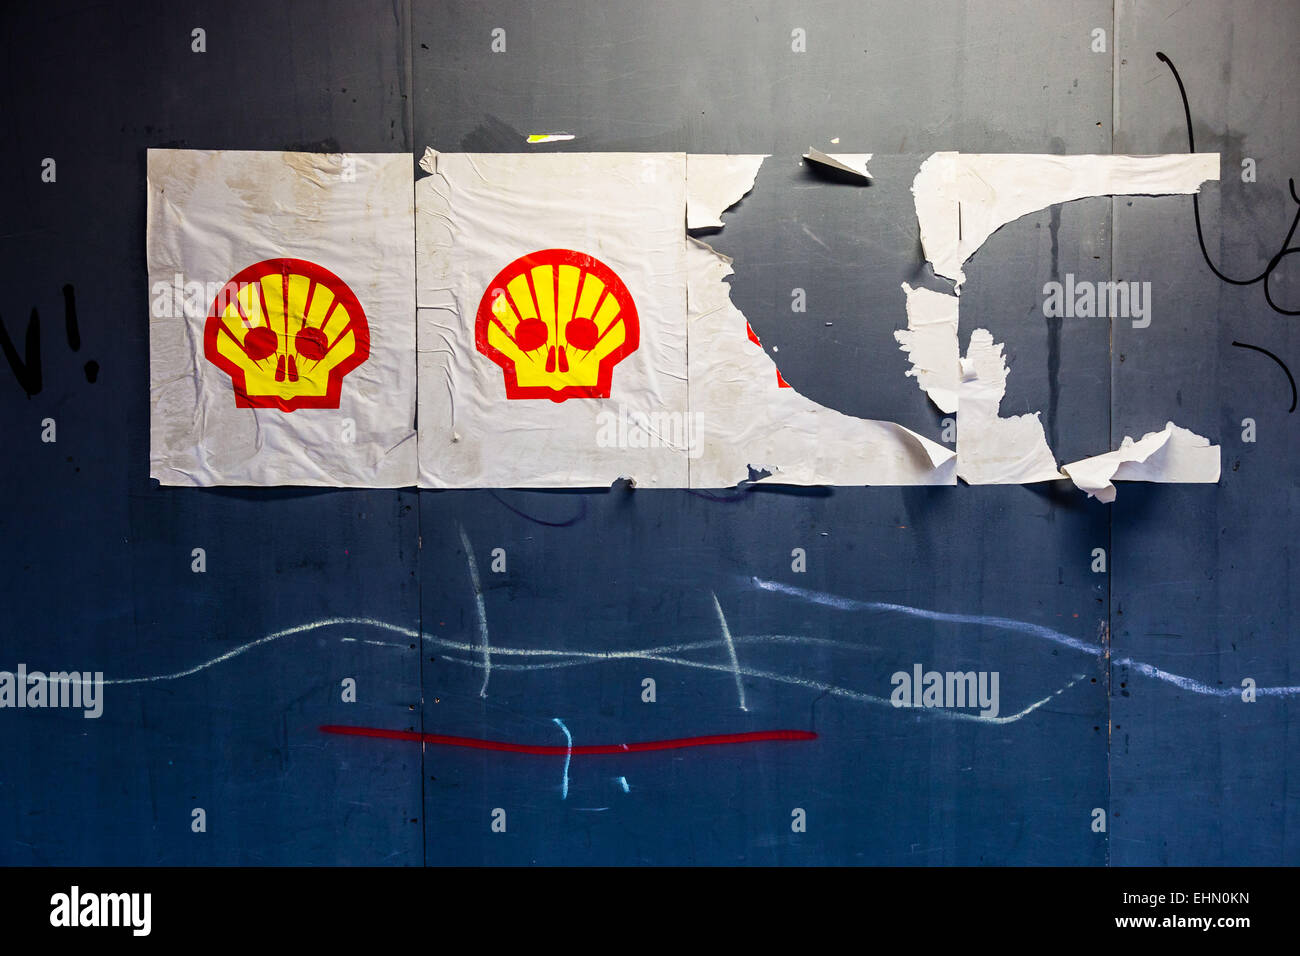 Il logo della compagnia petrolifera Shell dirottato da attivisti ambientali denunciando la responsabilità di Shell per l'inquinamento da petrolio. Foto Stock